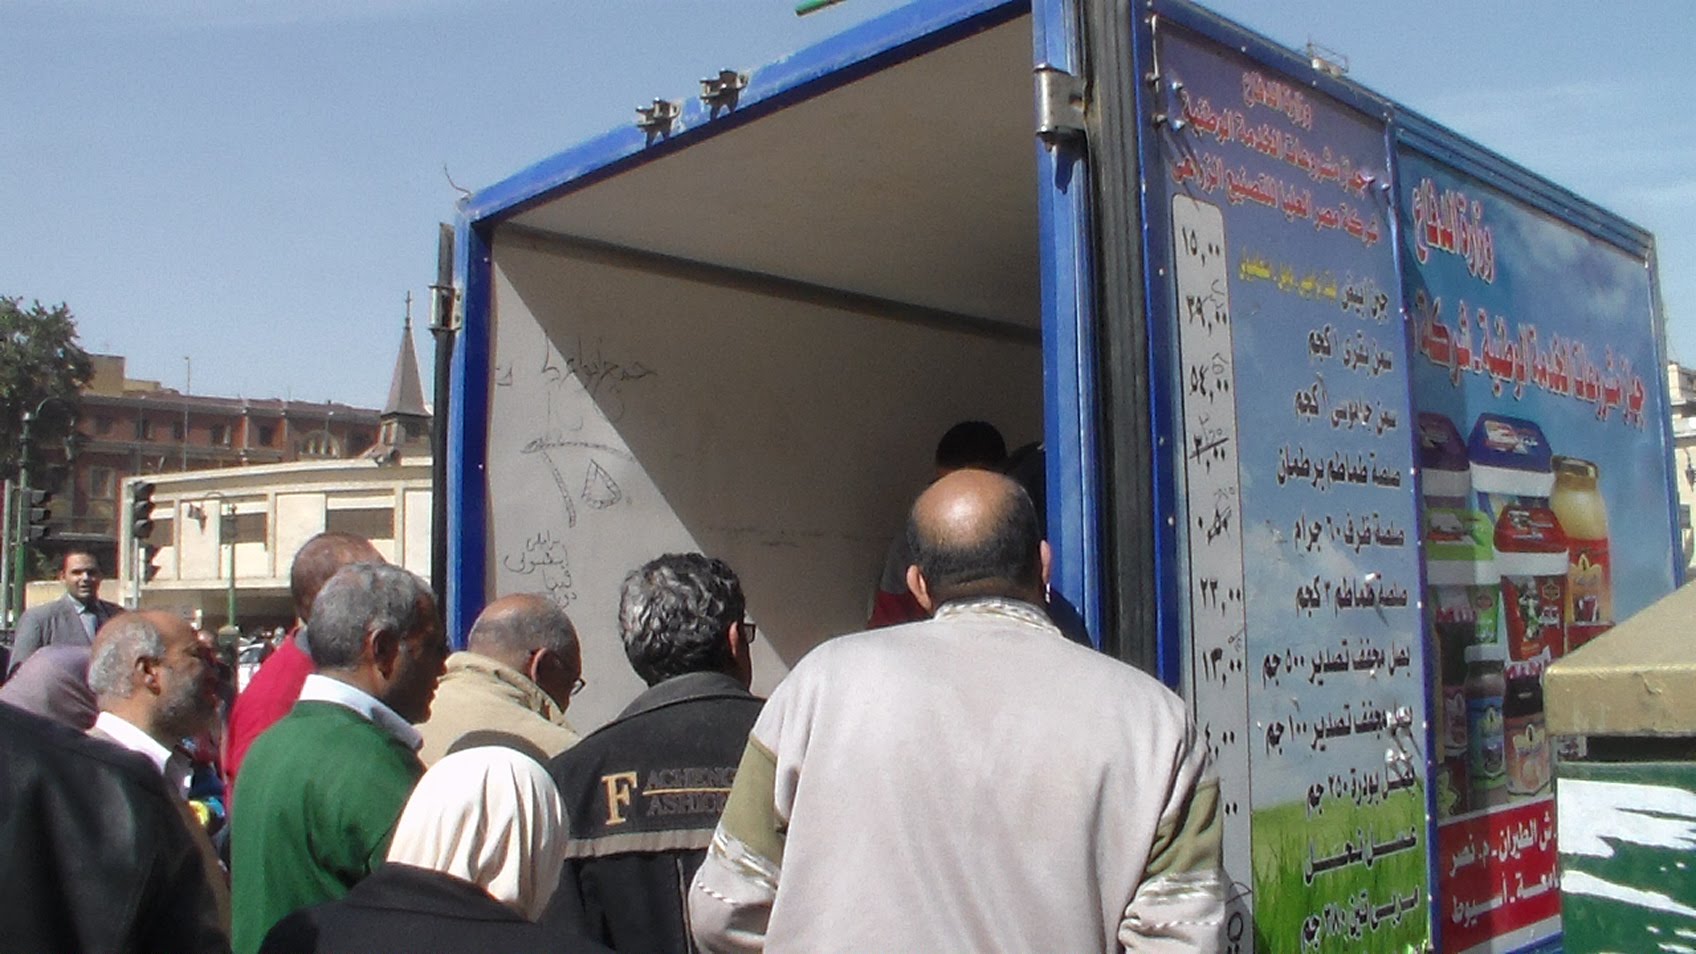   سيارة متنقلة لبيع السلع الغذائية والأسماك بأسعار مخفضة في قرية «أبوصوير البلد»